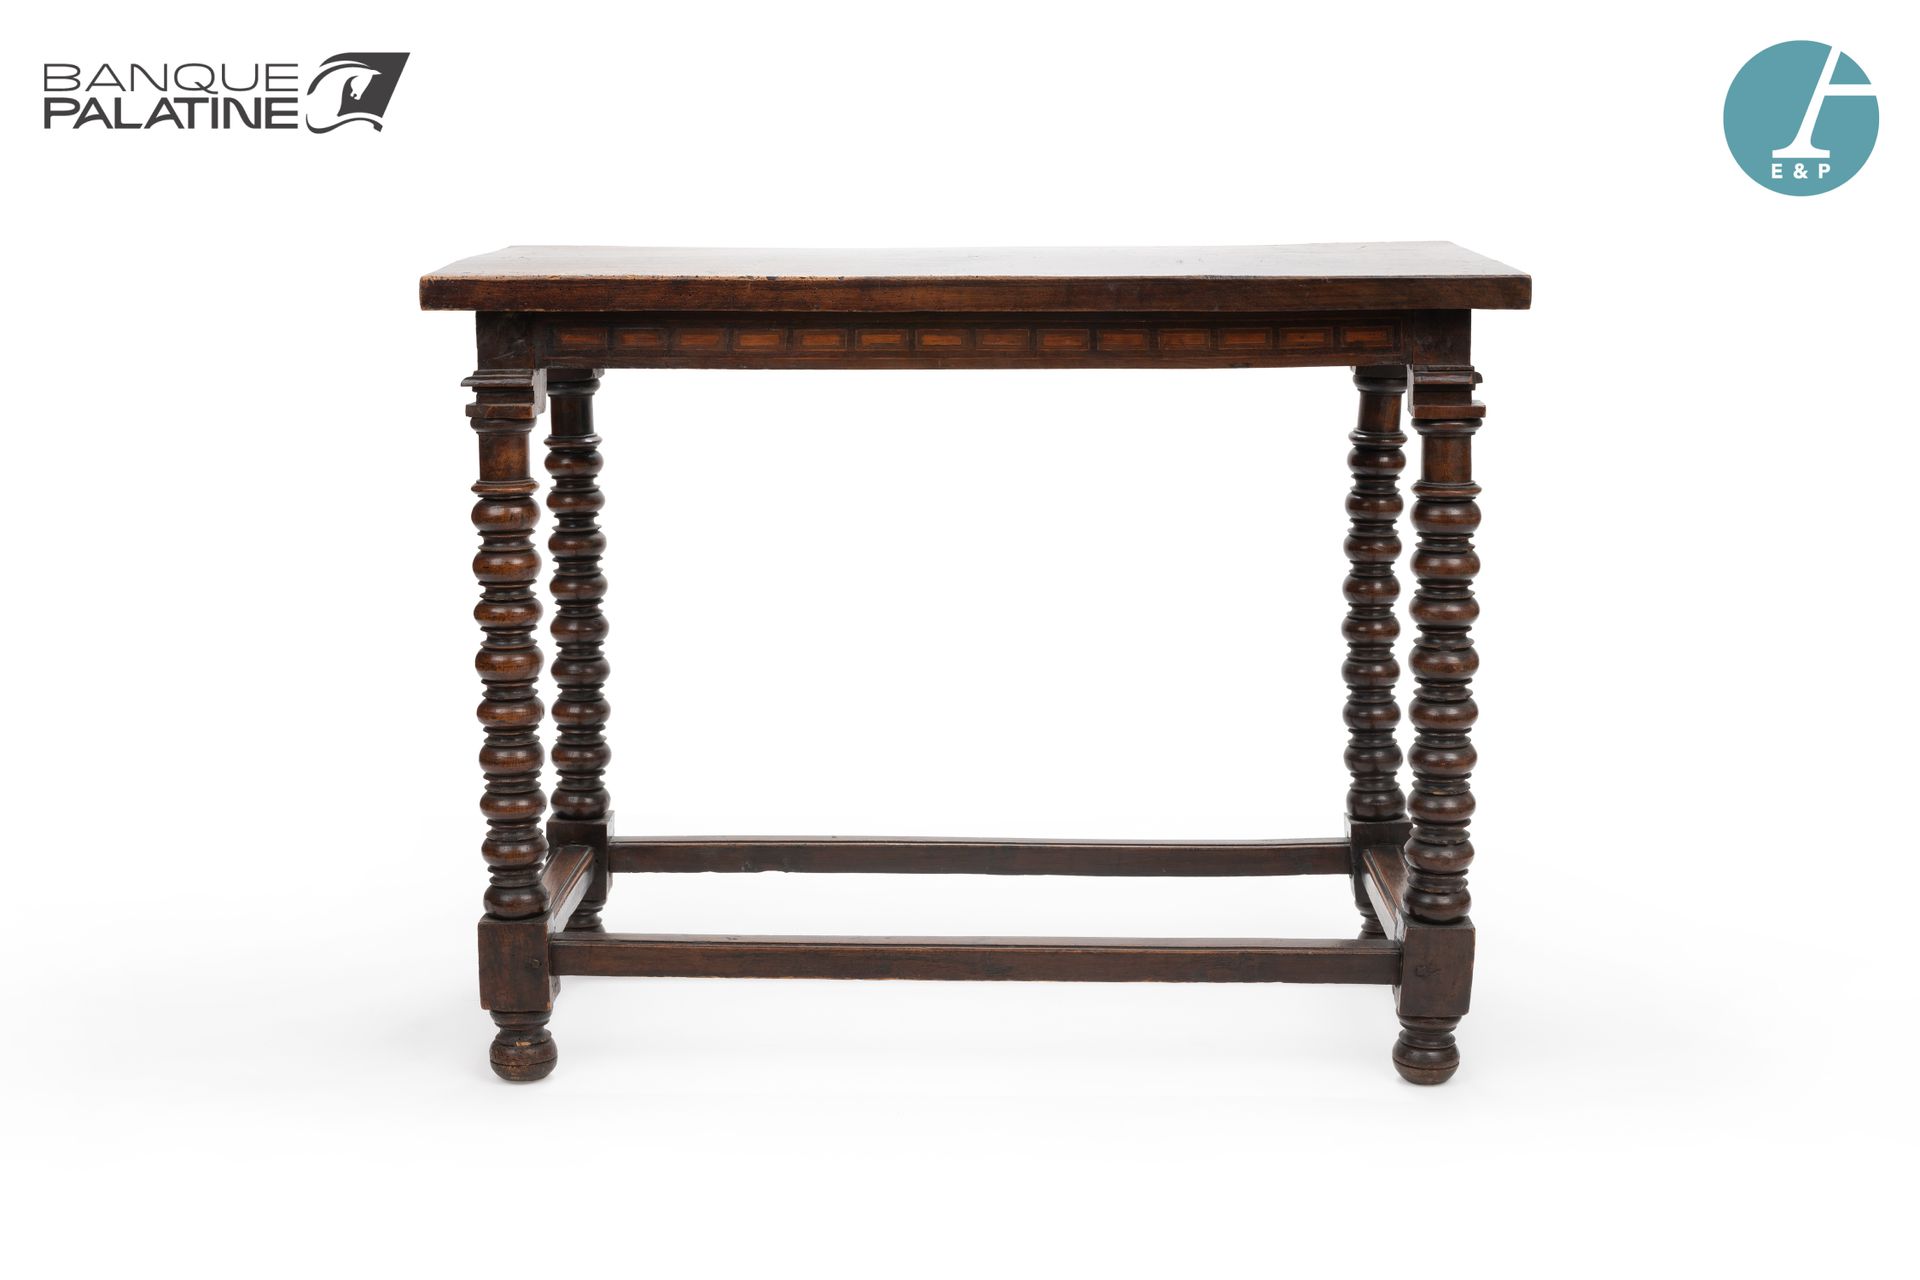 Null 天然木制的桌子，有模子，桌腿是扭曲的柱子，由横杆连接。

古董元素。

高：81厘米 - 宽：105厘米 - 深：48.5厘米